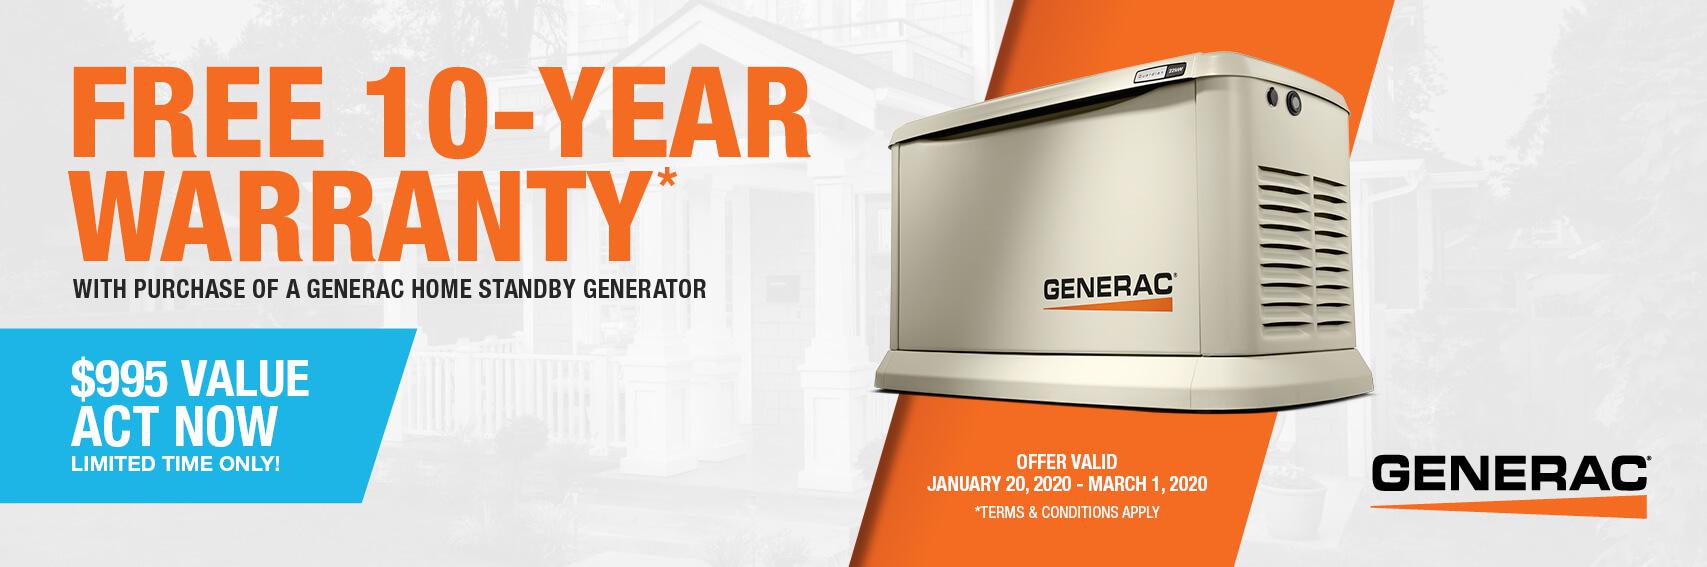 Homestandby Generator Deal | Warranty Offer | Generac Dealer | Mt Vernon, NY